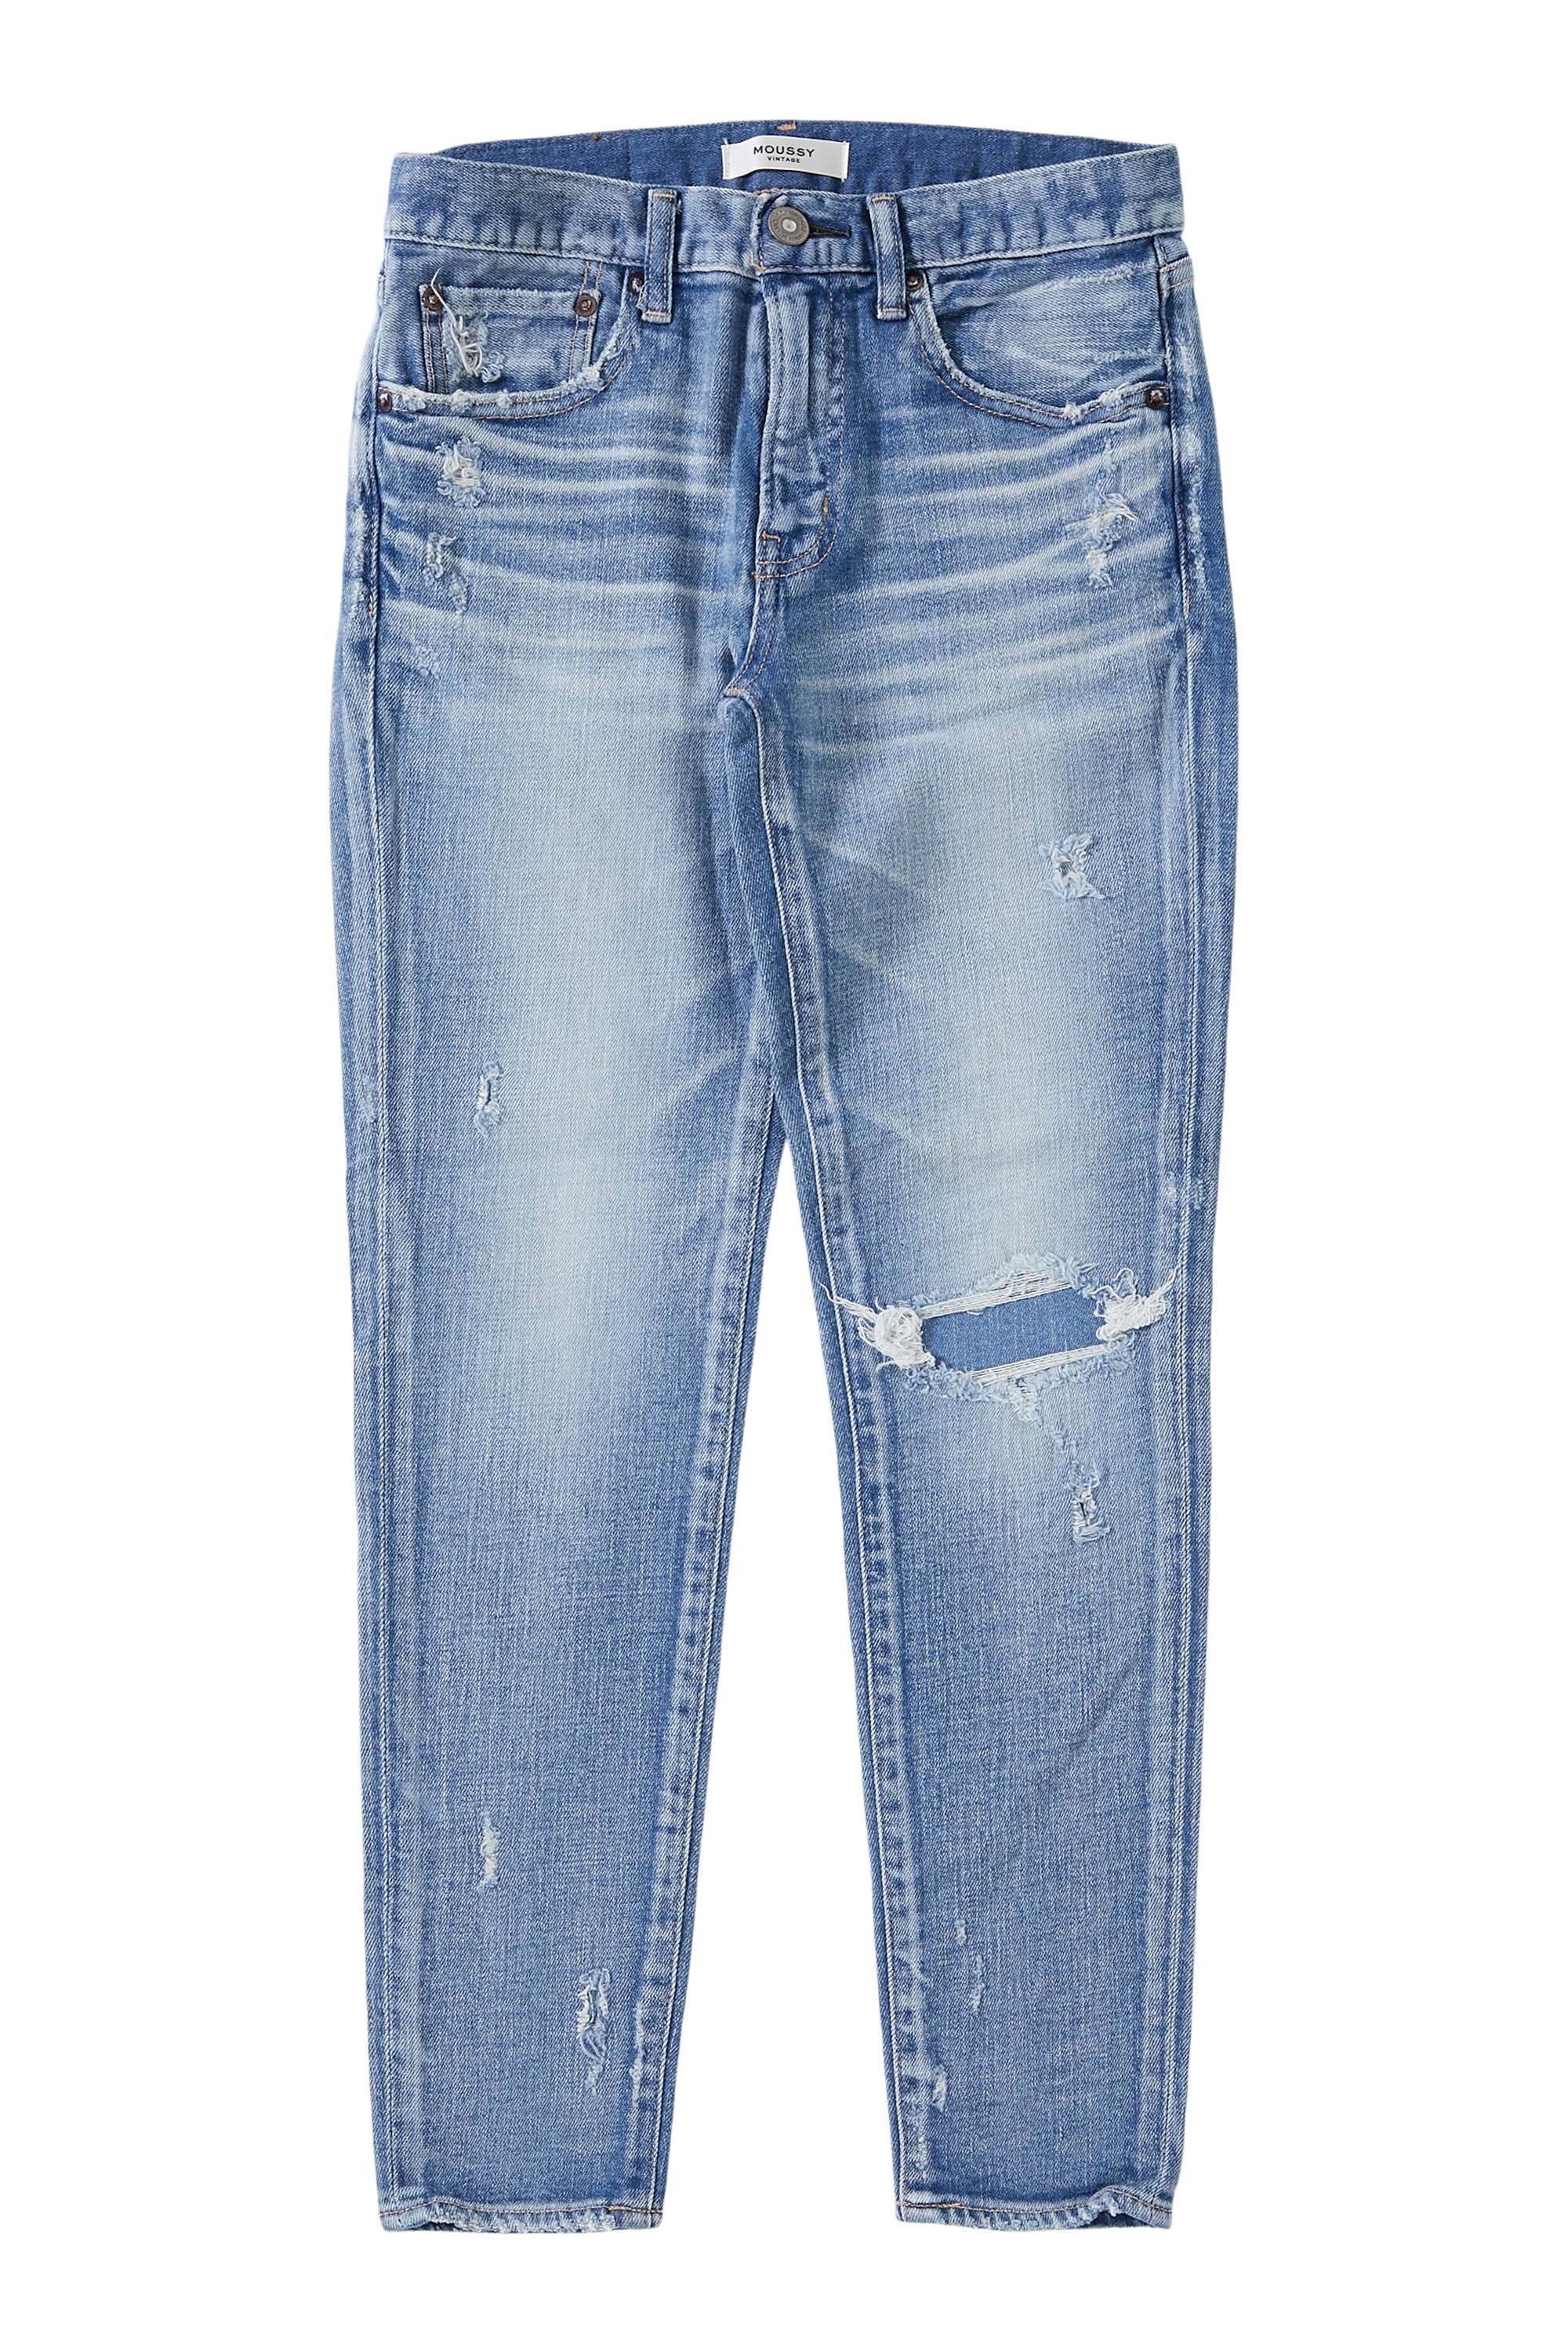 Moussy Denim Lenwood Skinny Jeans in Light Blue